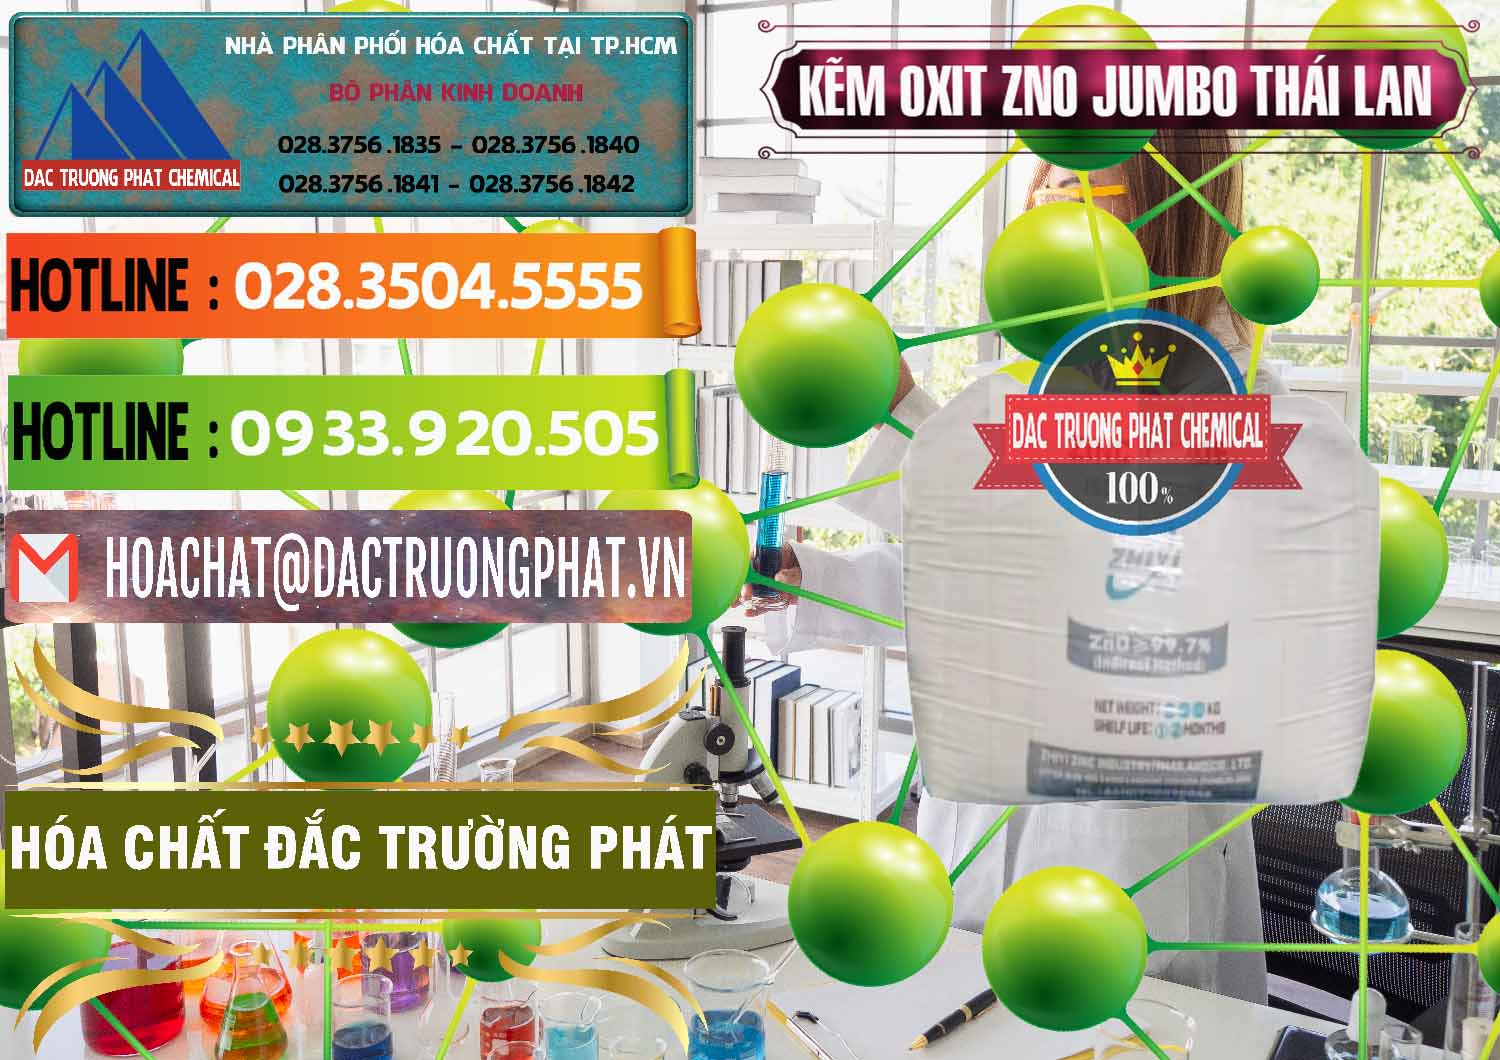 Đơn vị chuyên bán ( cung ứng ) Zinc Oxide - Bột Kẽm Oxit ZNO Jumbo Bành Thái Lan Thailand - 0370 - Chuyên bán & cung cấp hóa chất tại TP.HCM - cungcaphoachat.com.vn